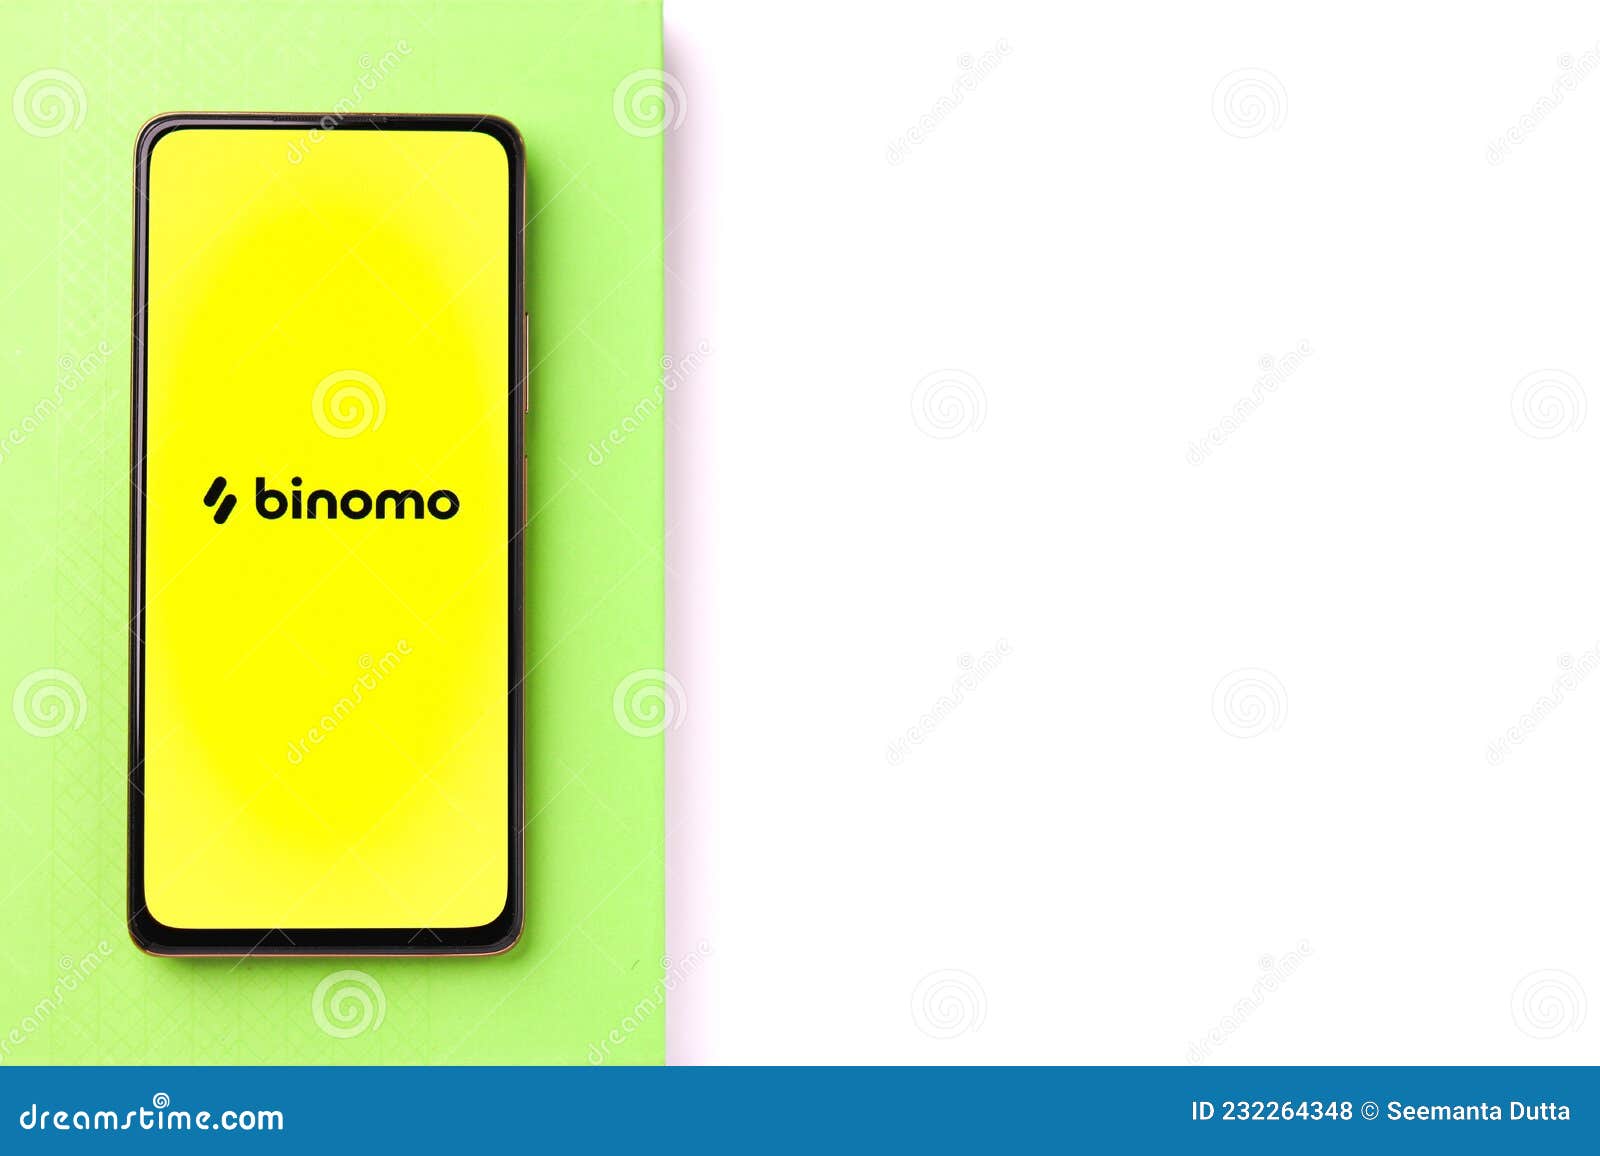 Binomo: платформа, где надежность имеет значение